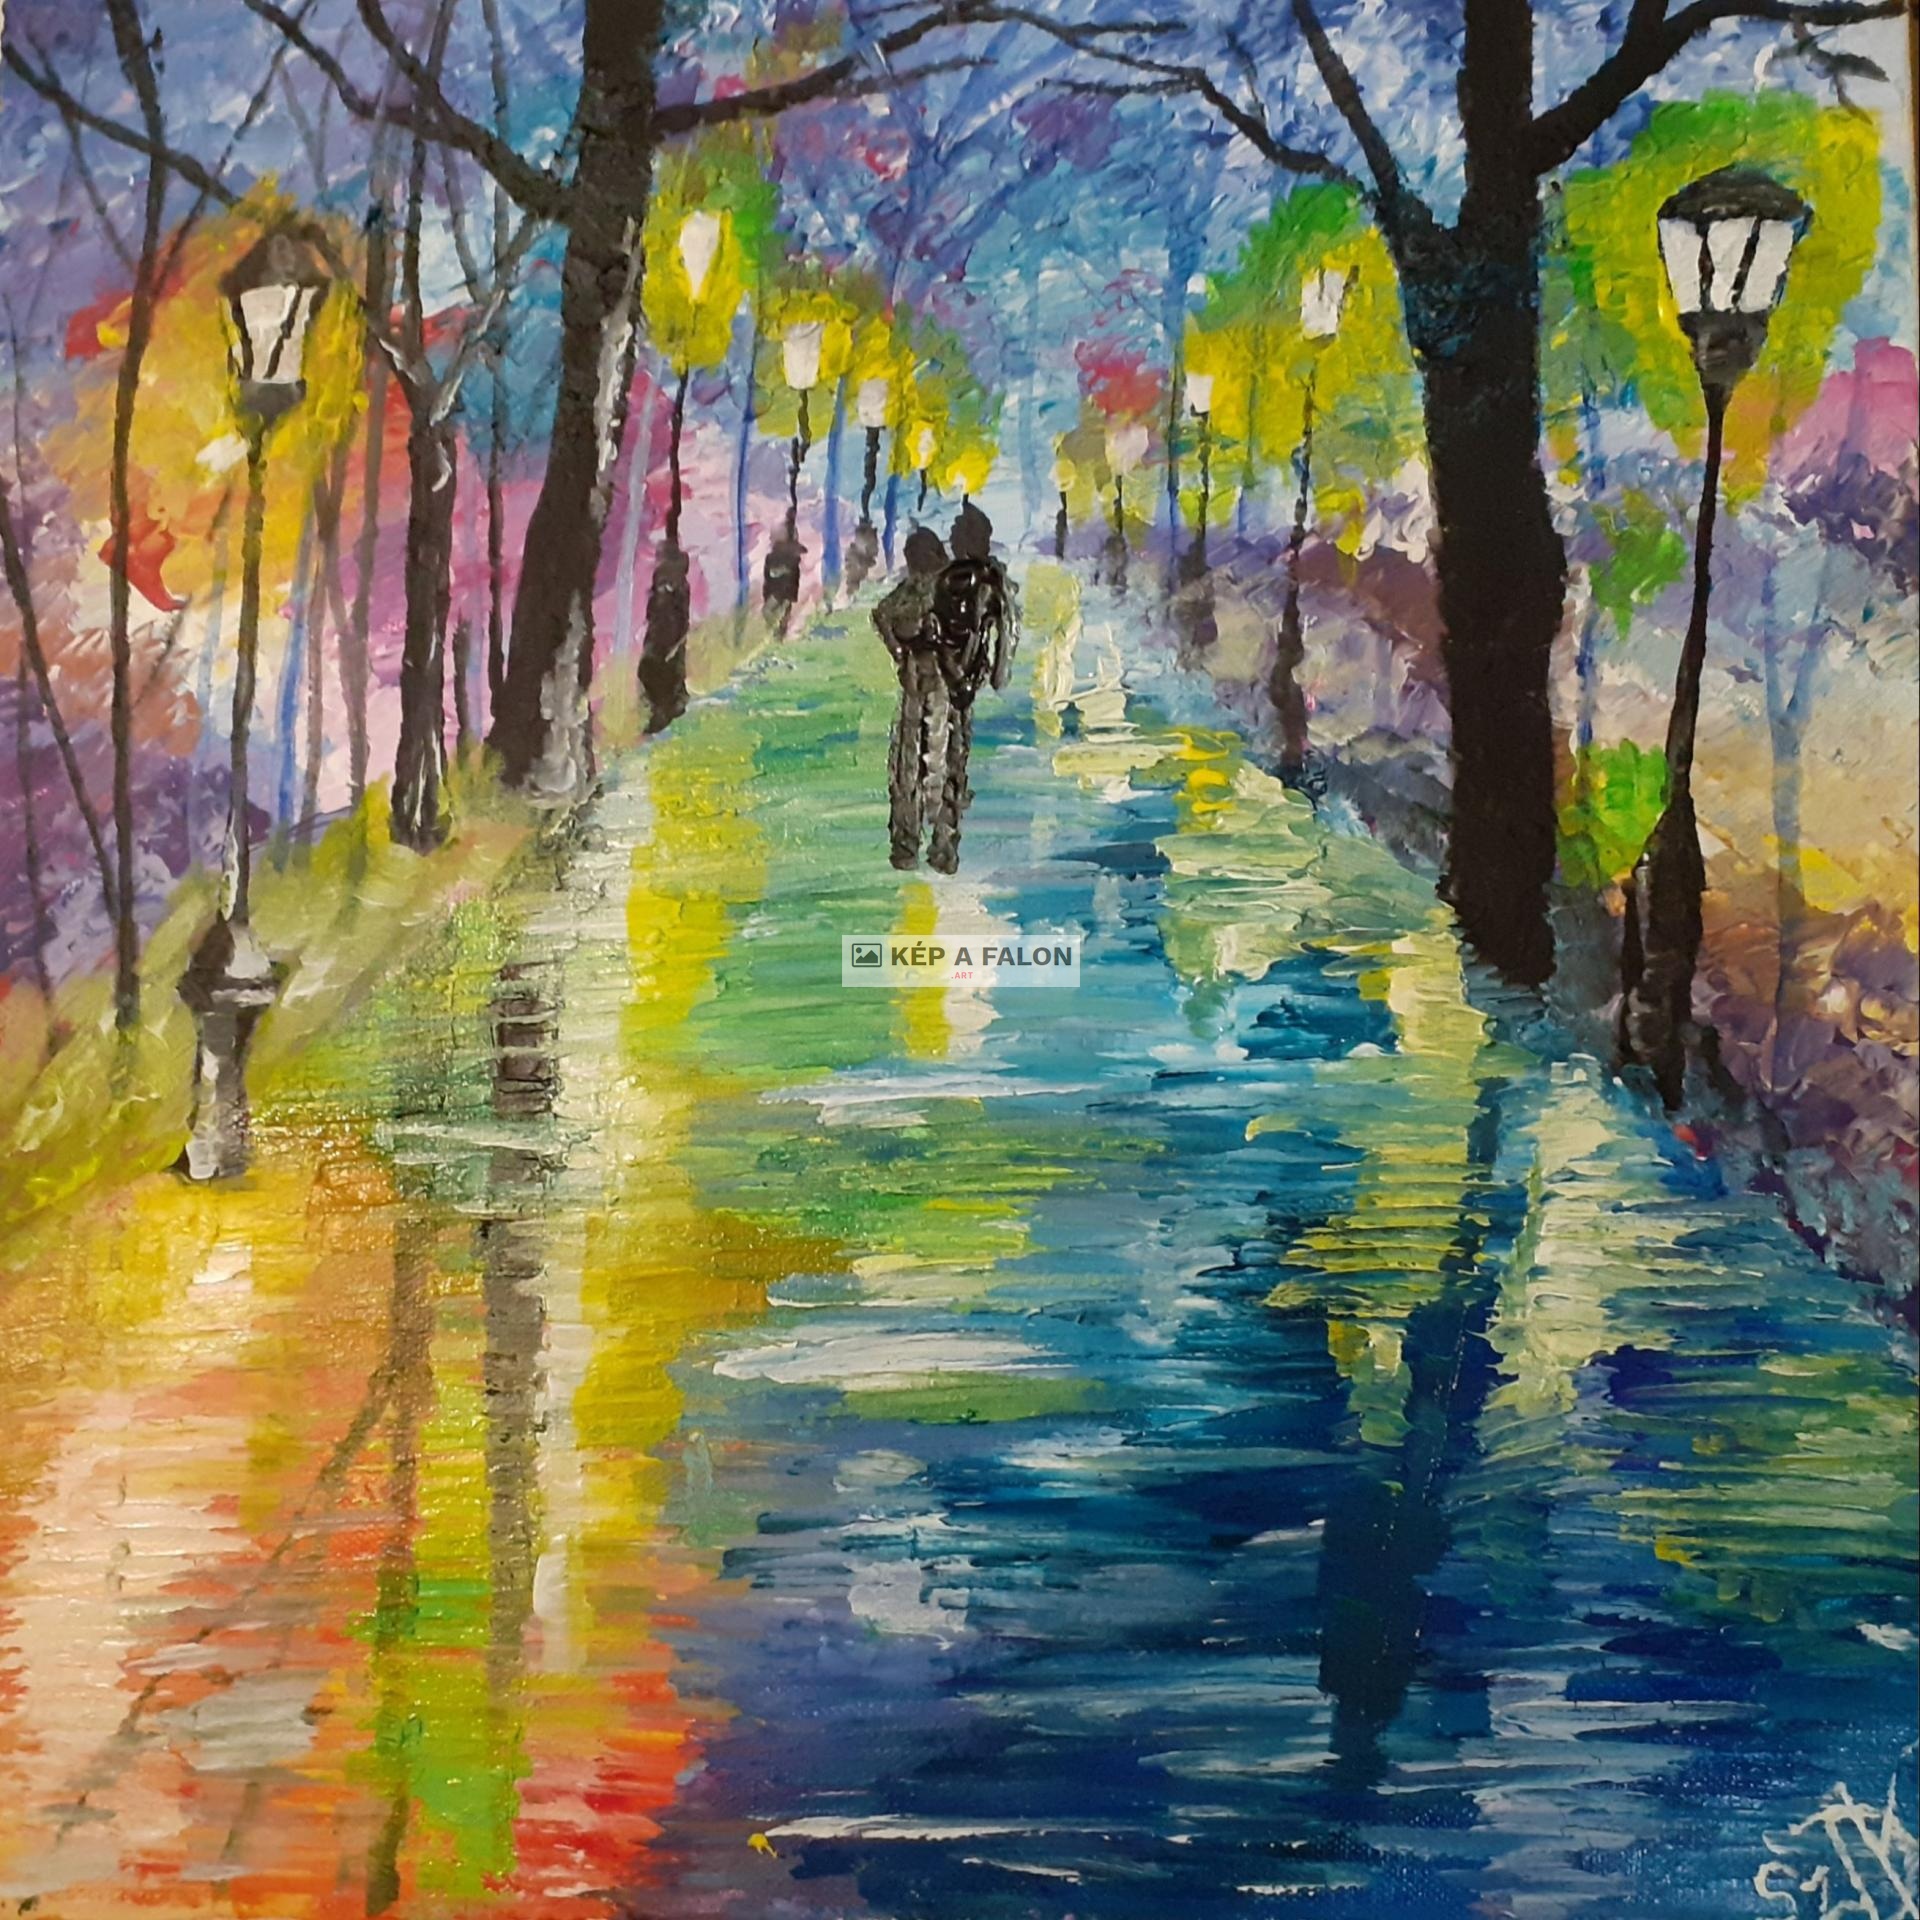 Esti séta (Leonid Afremov festménye után) by: Szalai Dora Kinga | 2019. december 27., olaj festmény